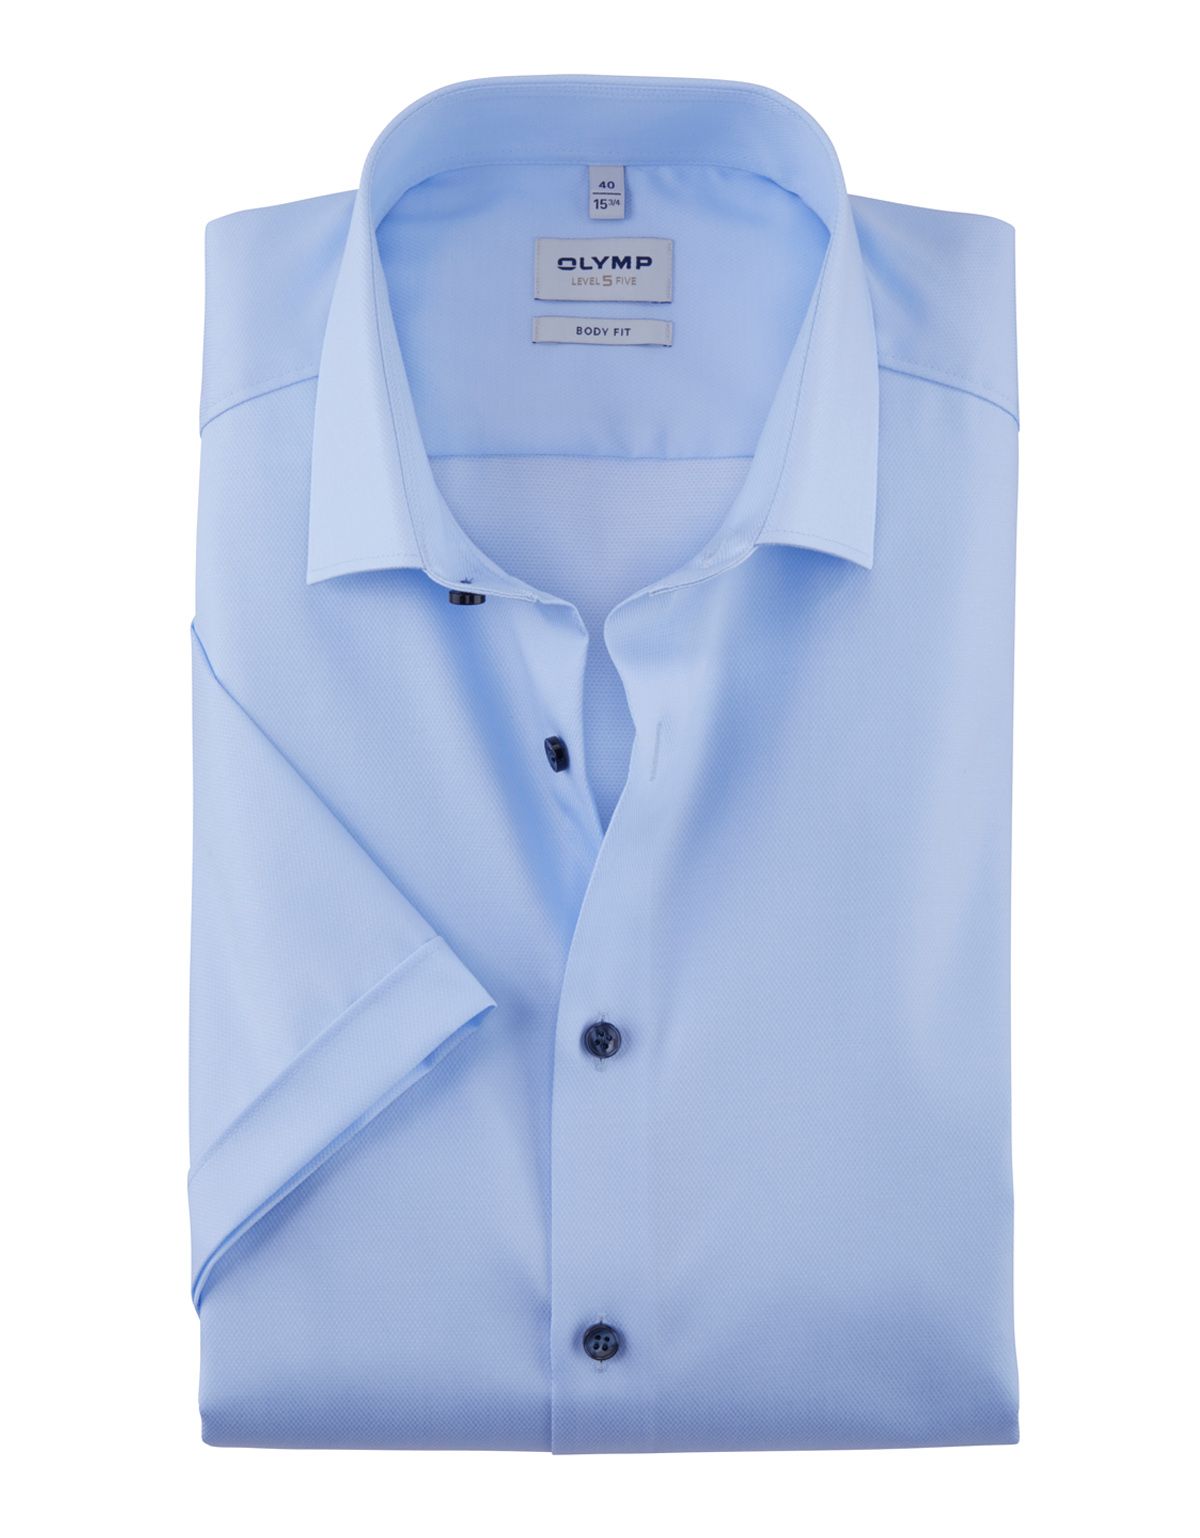 Рубашка мужская приталенная OLYMP Level Five с коротким рукавом[ГОЛУБОЙ]